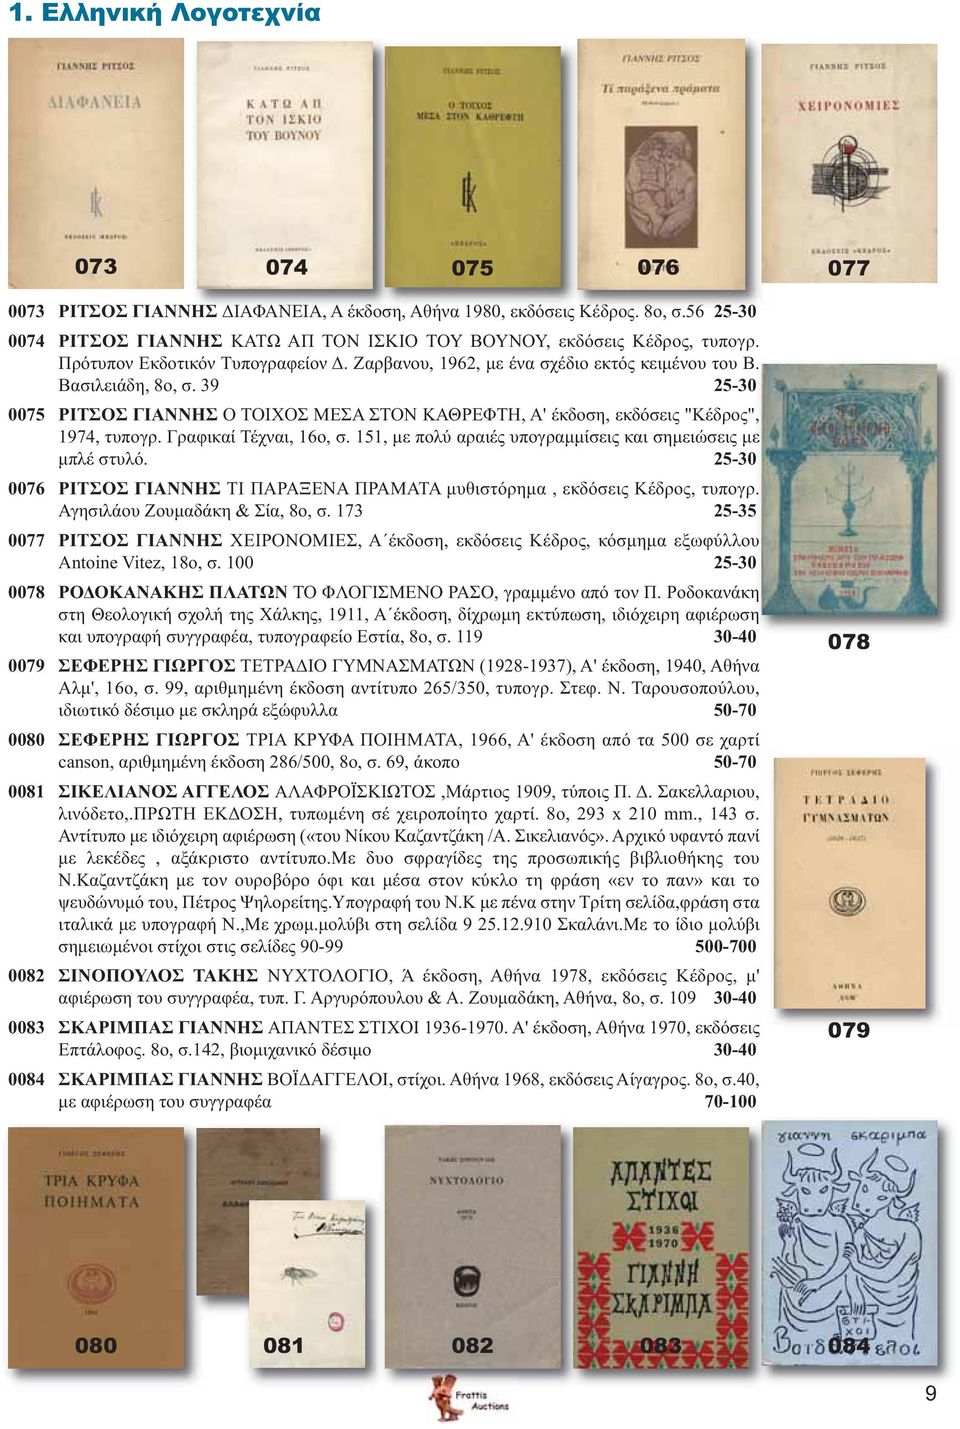 39 25-30 0075 ΡΙΤΣΟΣ ΓΙΑΝΝΗΣ Ο ΤΟΙΧΟΣ ΜΕΣΑ ΣΤΟΝ ΚΑΘΡΕΦΤΗ, Α' έκδοση, εκδόσεις "Κέδρος", 1974, τυπογρ. Γραφικαί Τέχναι, 16ο, σ. 151, με πολύ αραιές υπογραμμίσεις και σημειώσεις με μπλέ στυλό.